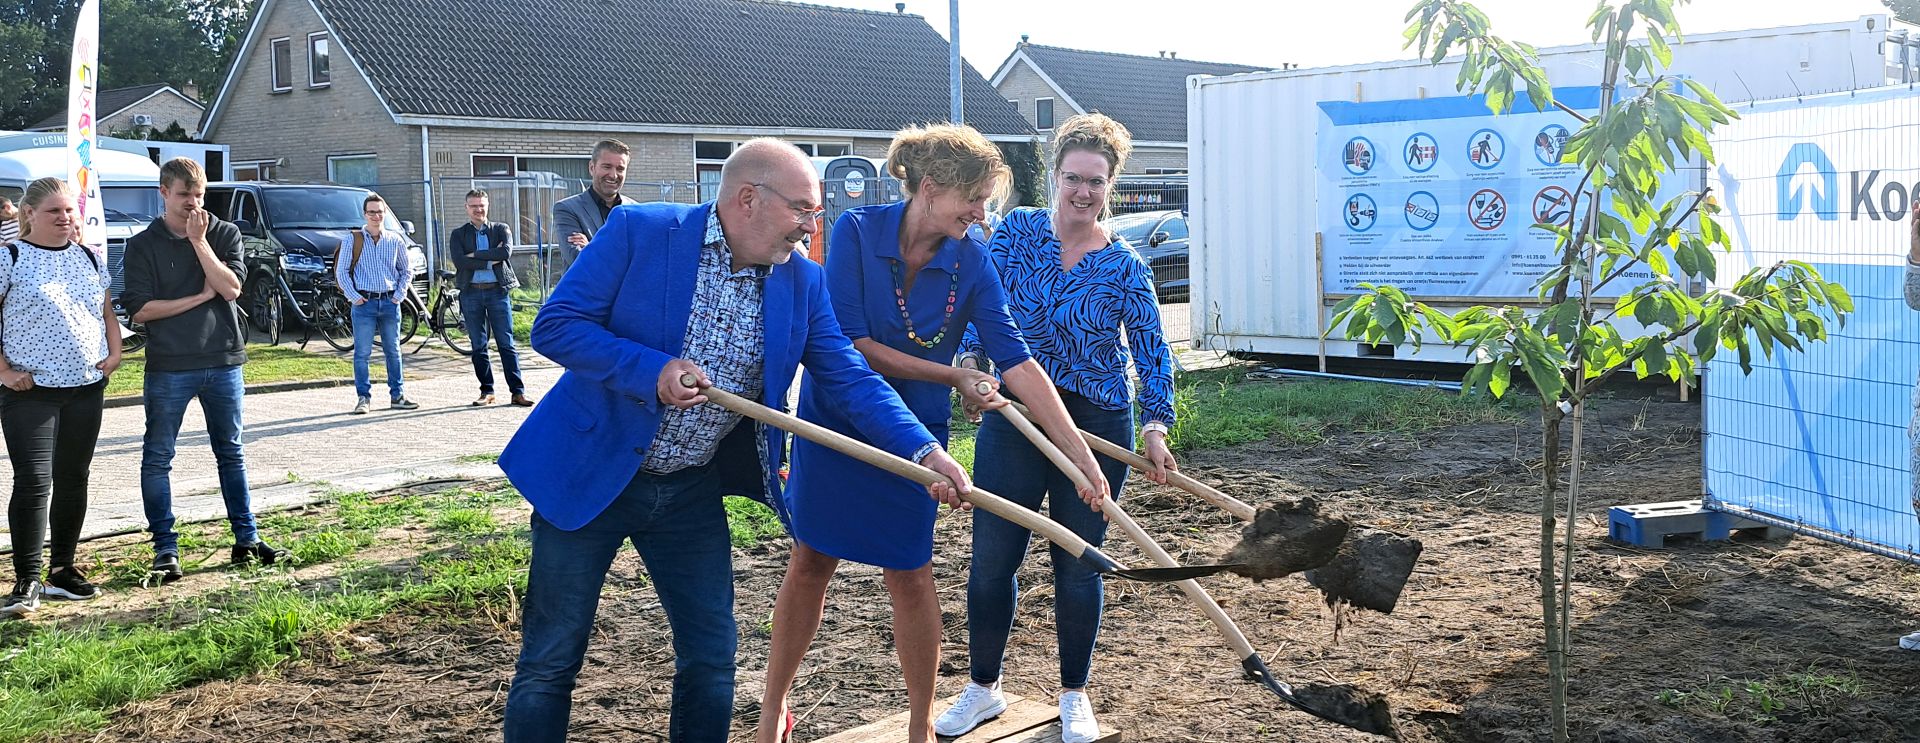 Woonservice viert start van bouw 70 nieuwe woningen in 2e Exloërmond 